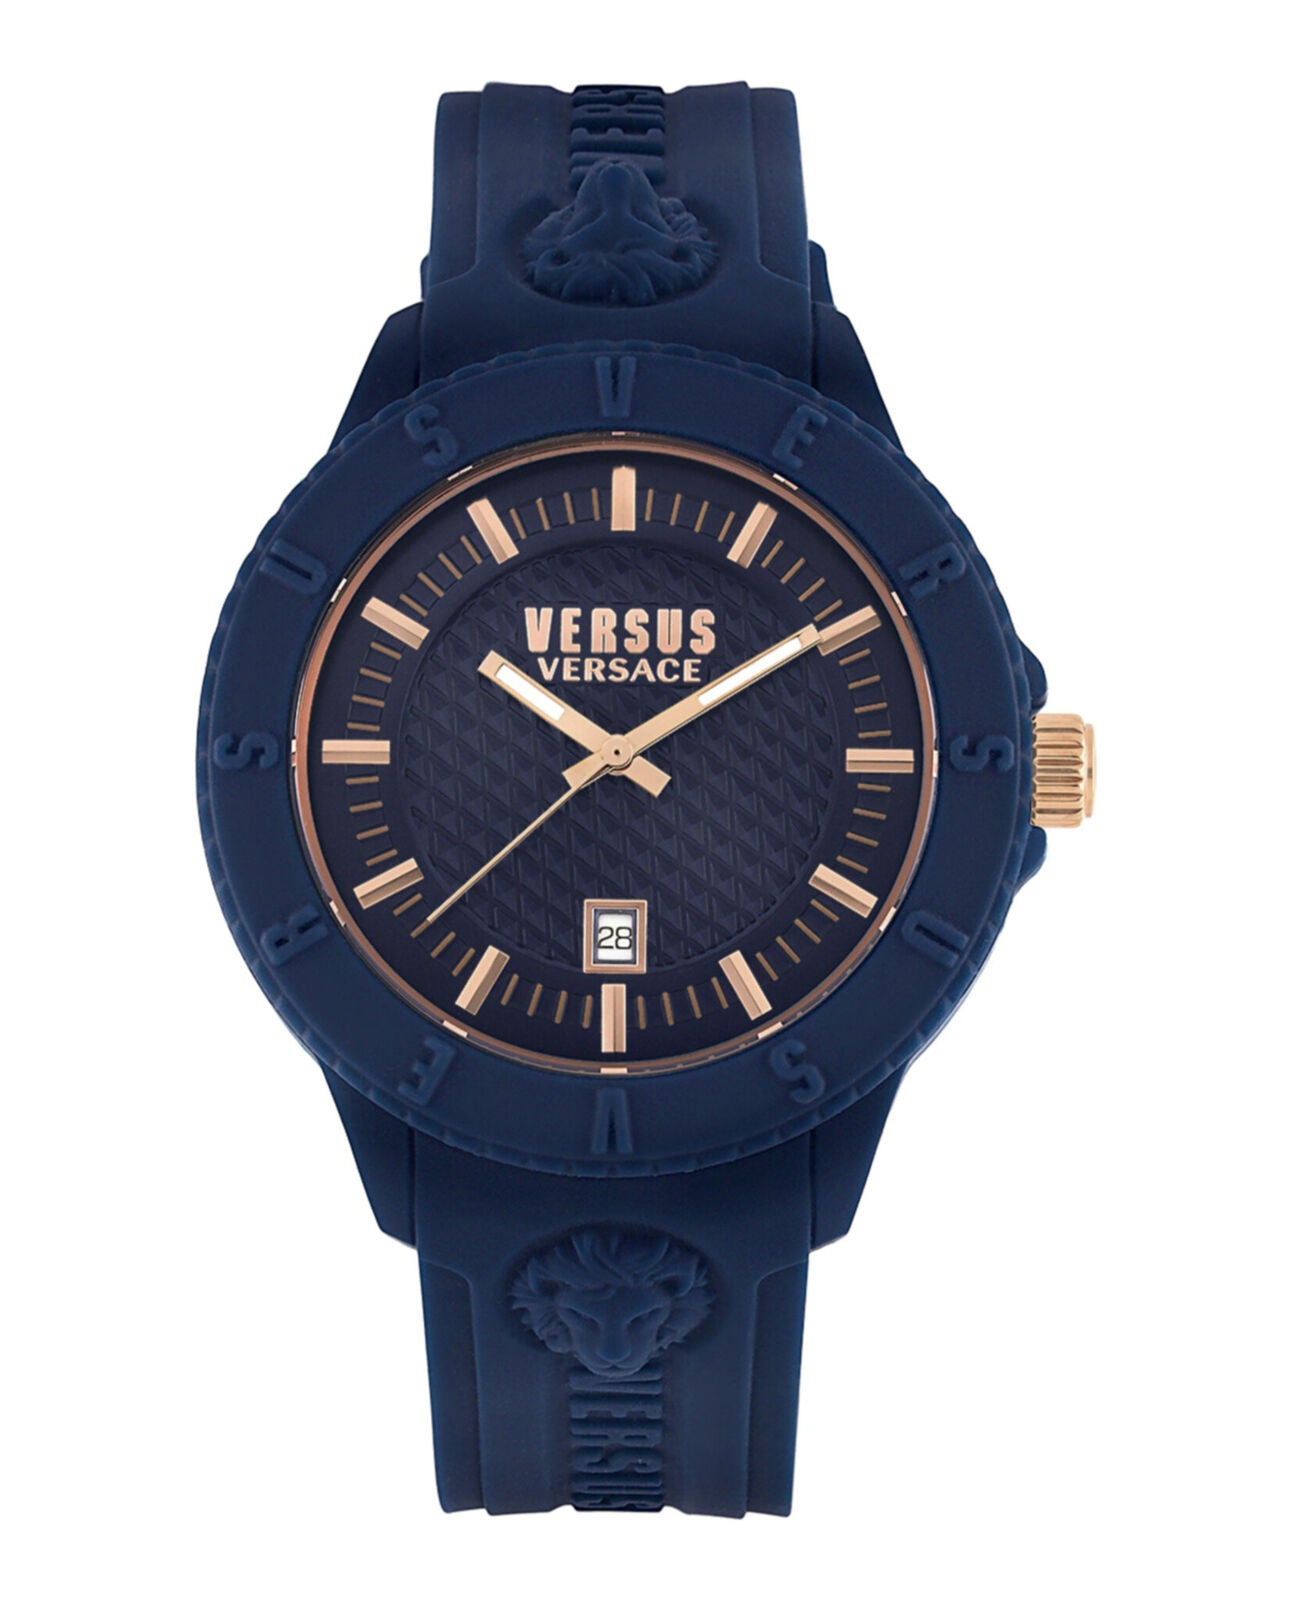 Versace Versus Men's Chronograph Watch